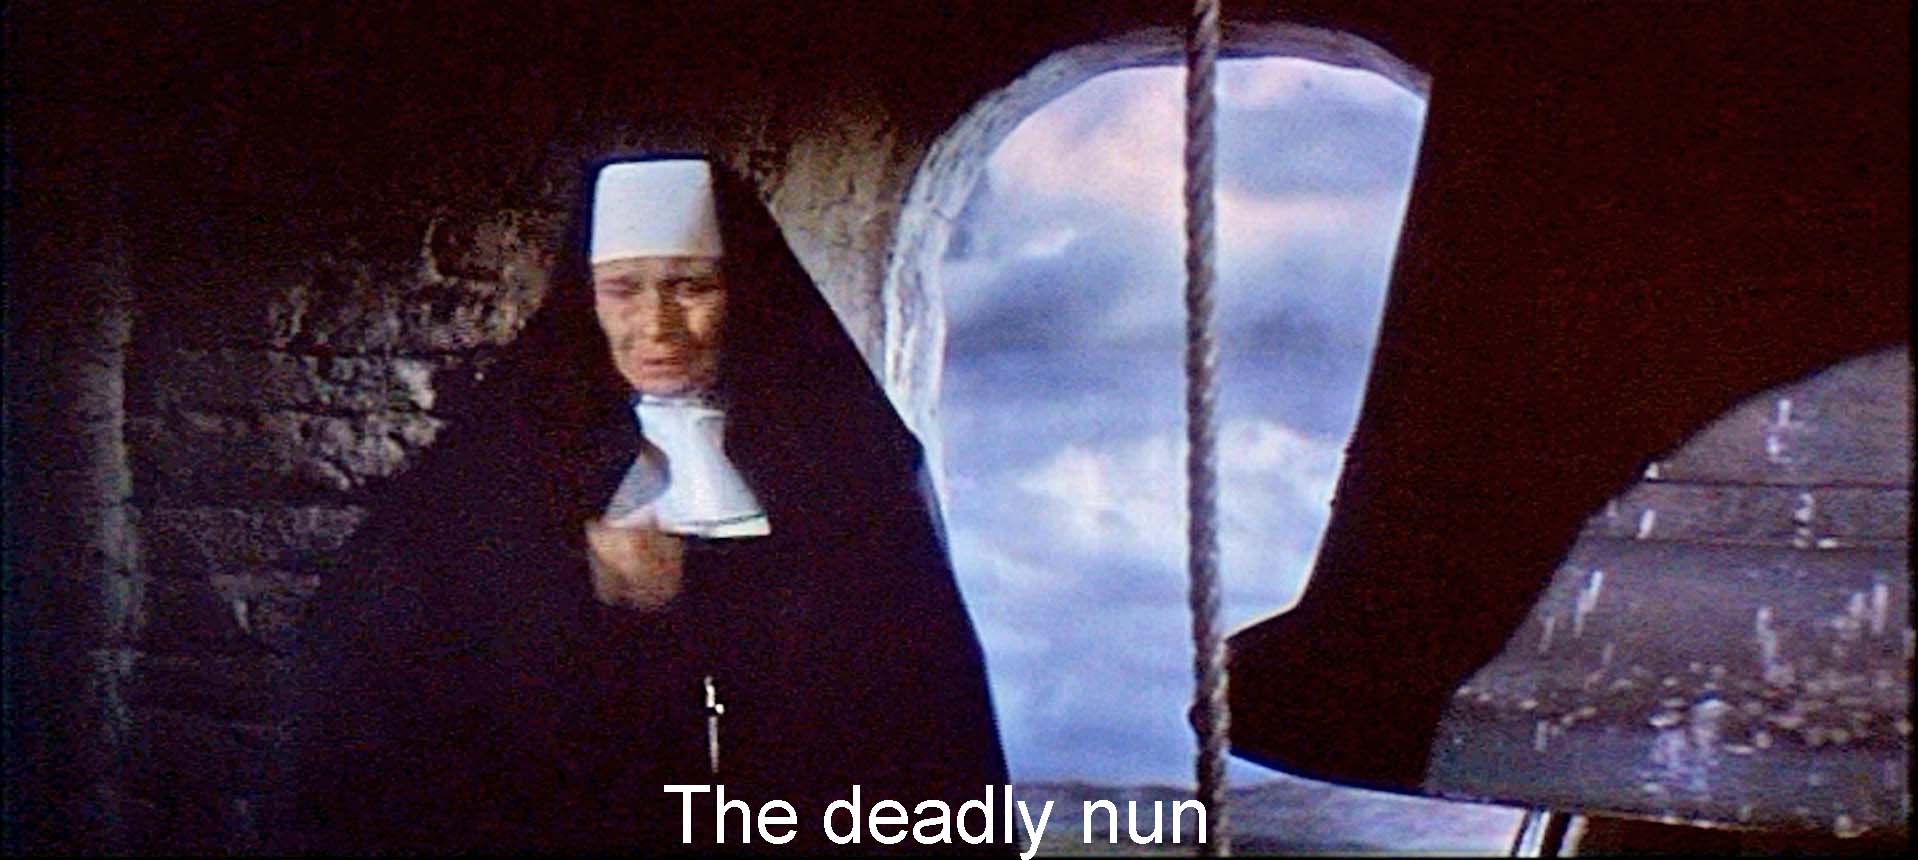 The deadly nun